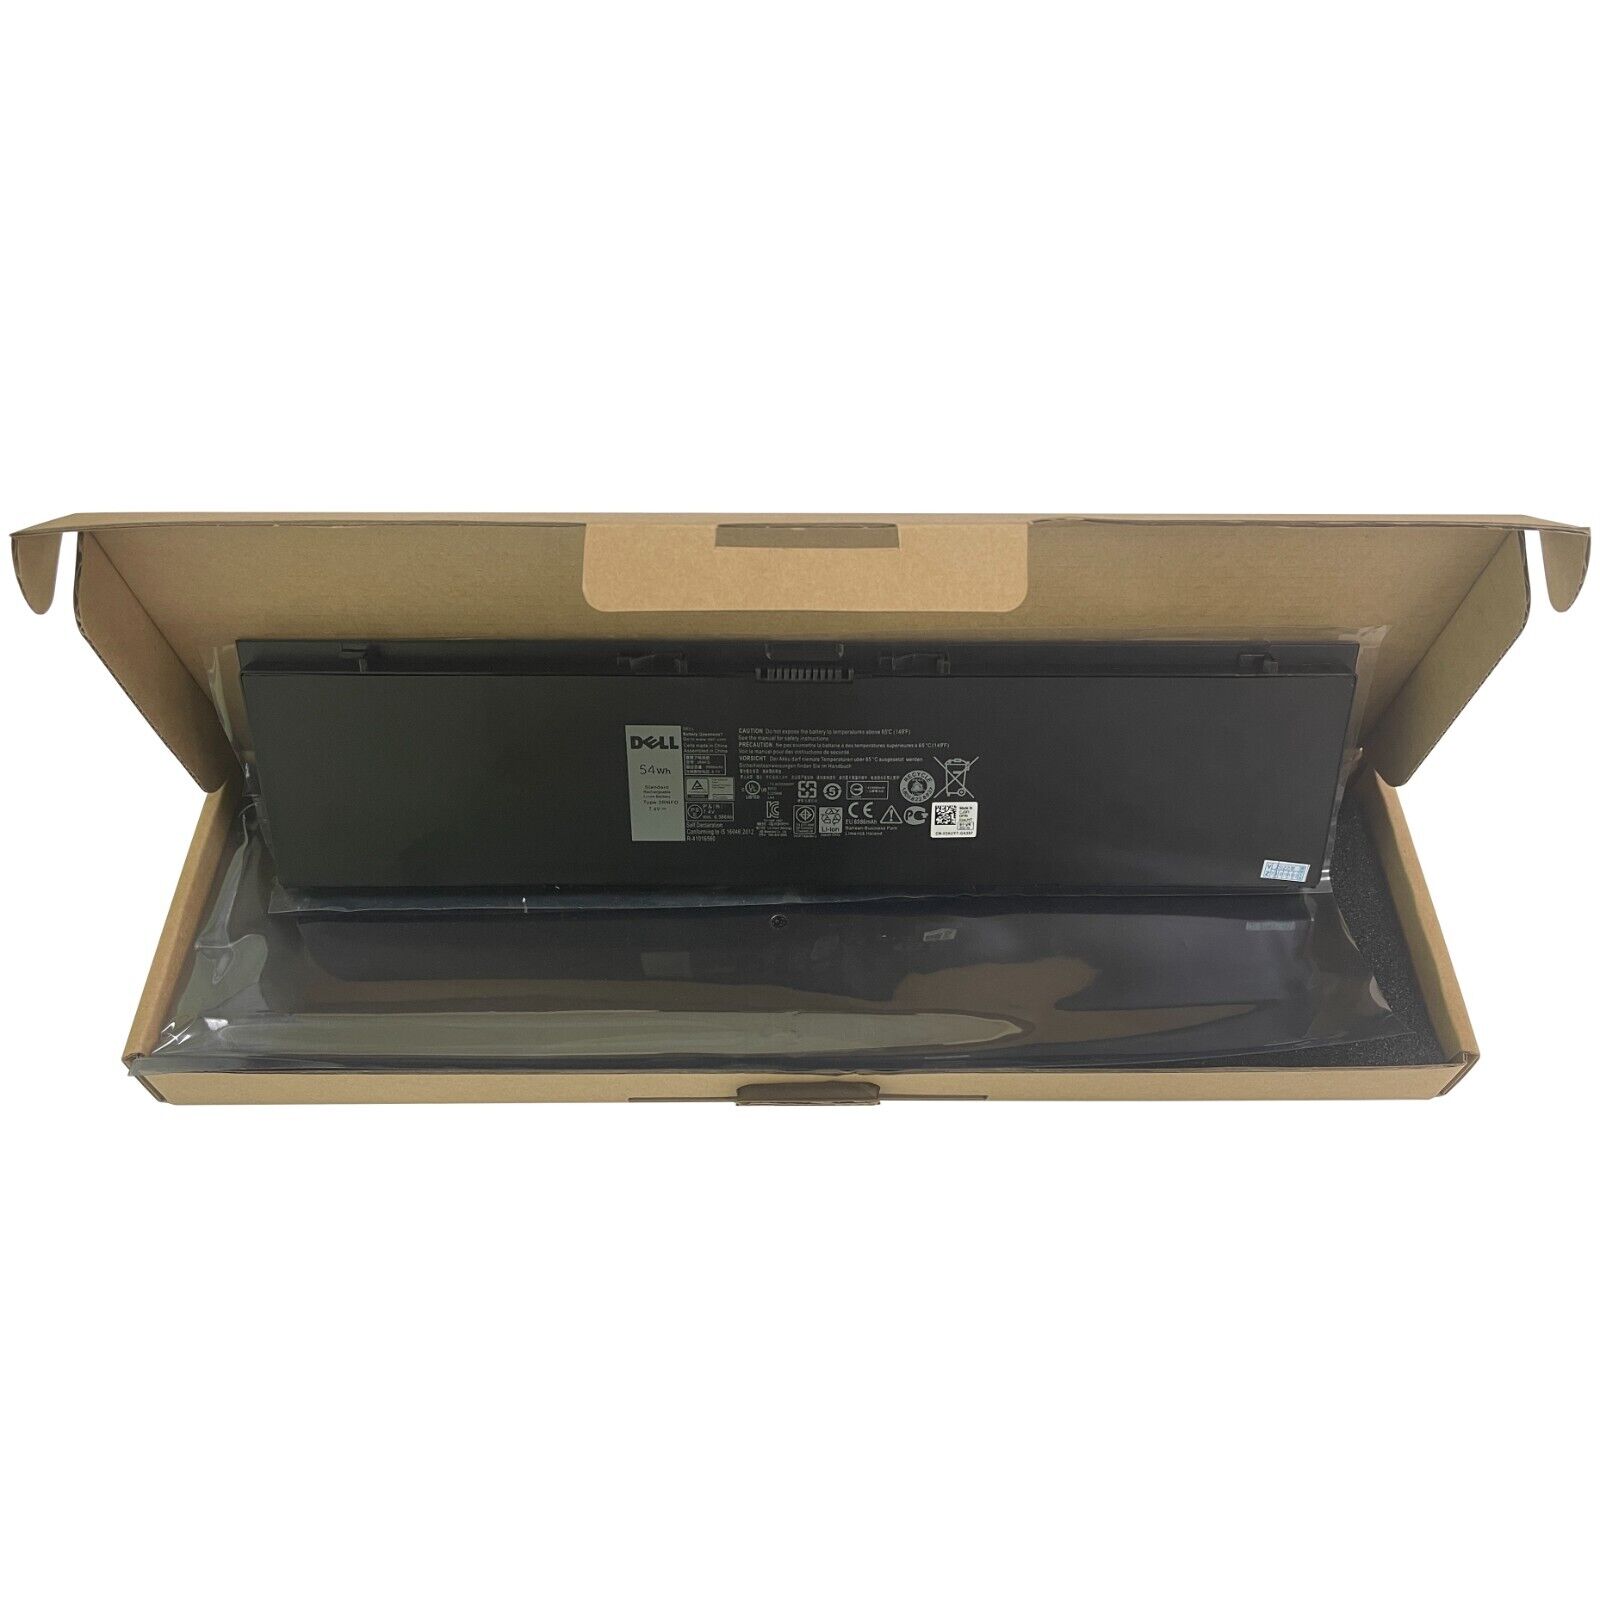 Genuine OEM 54Wh 3RNFD Laptop Battery For Dell Latitude E7450 E7420 E7440 Series